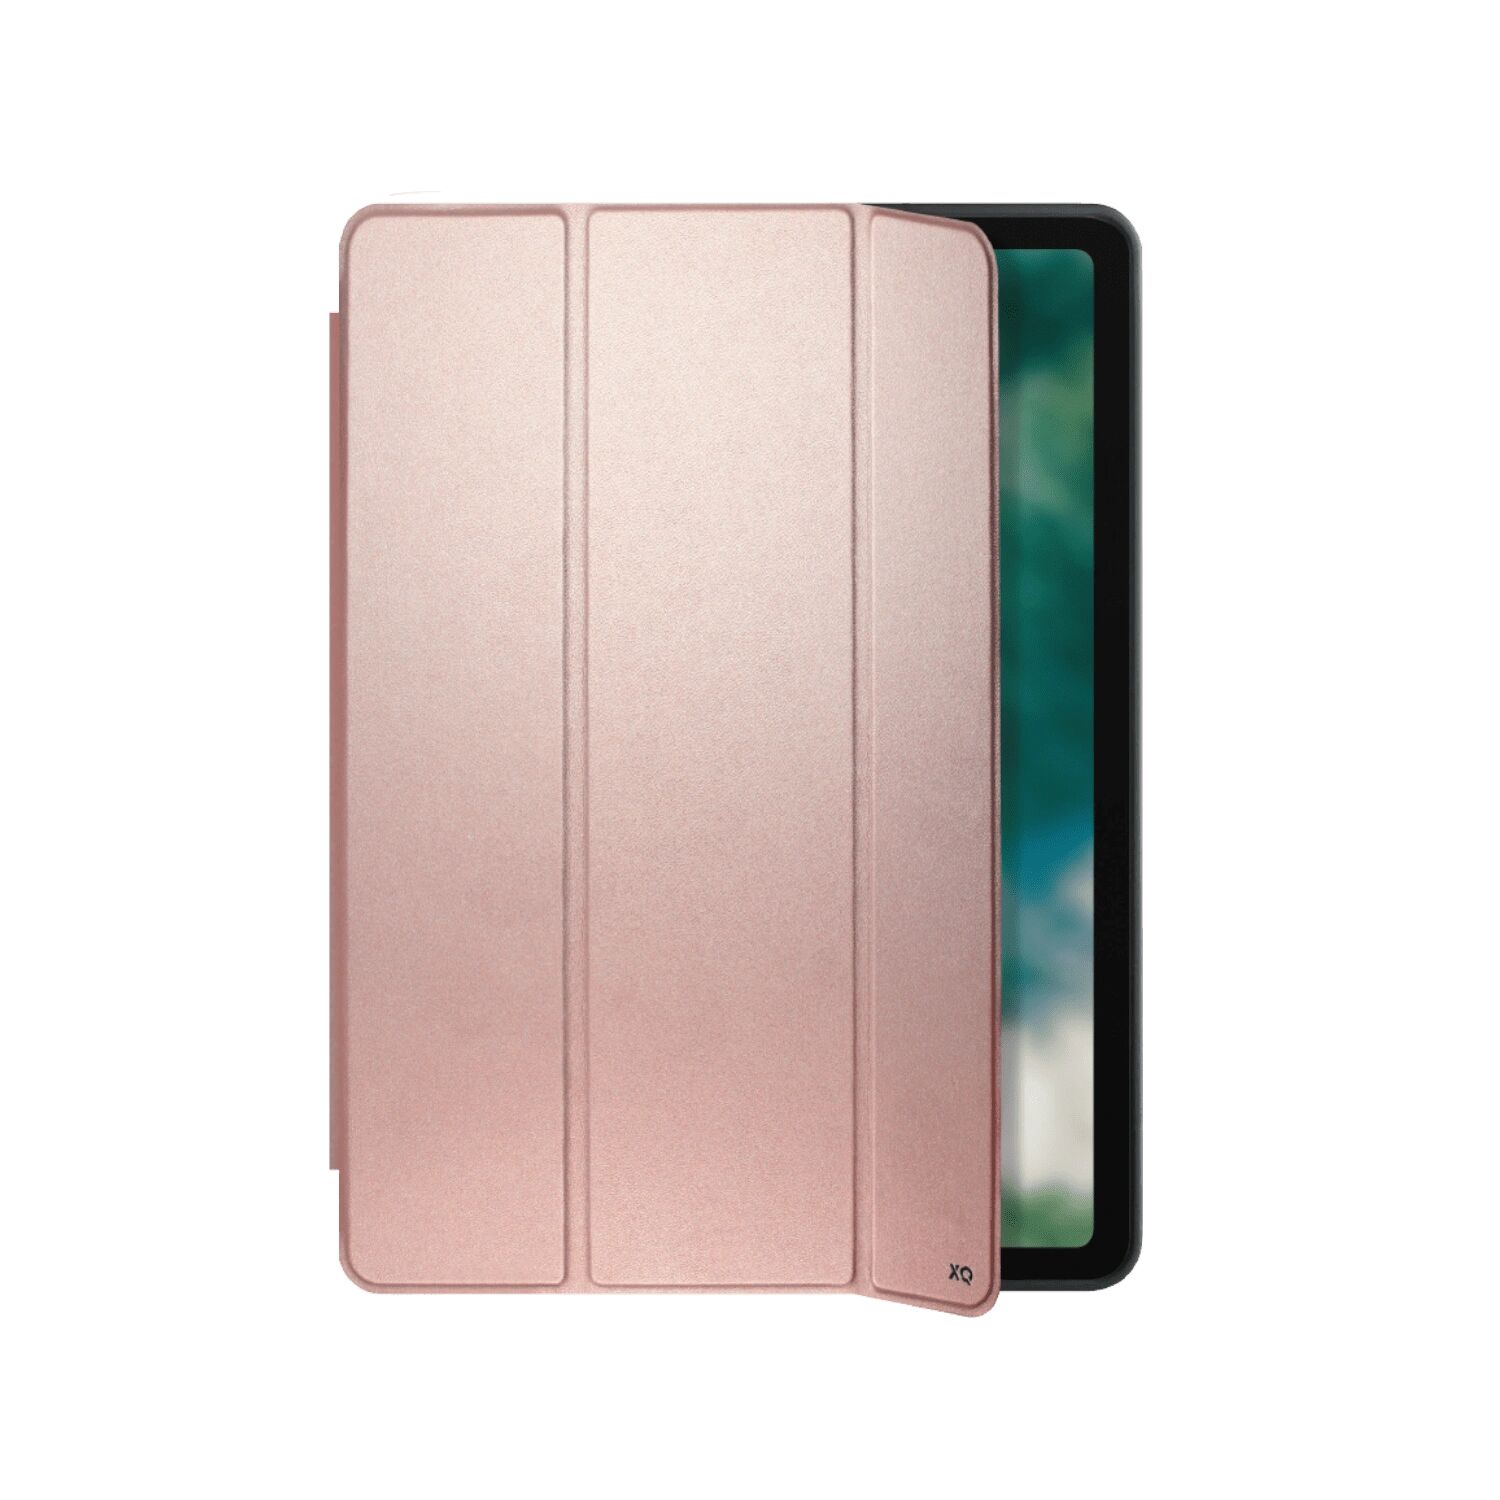 Xqisit Pouzdro pro iPad Air 4 (2020) - Xqisit, Piave Pink